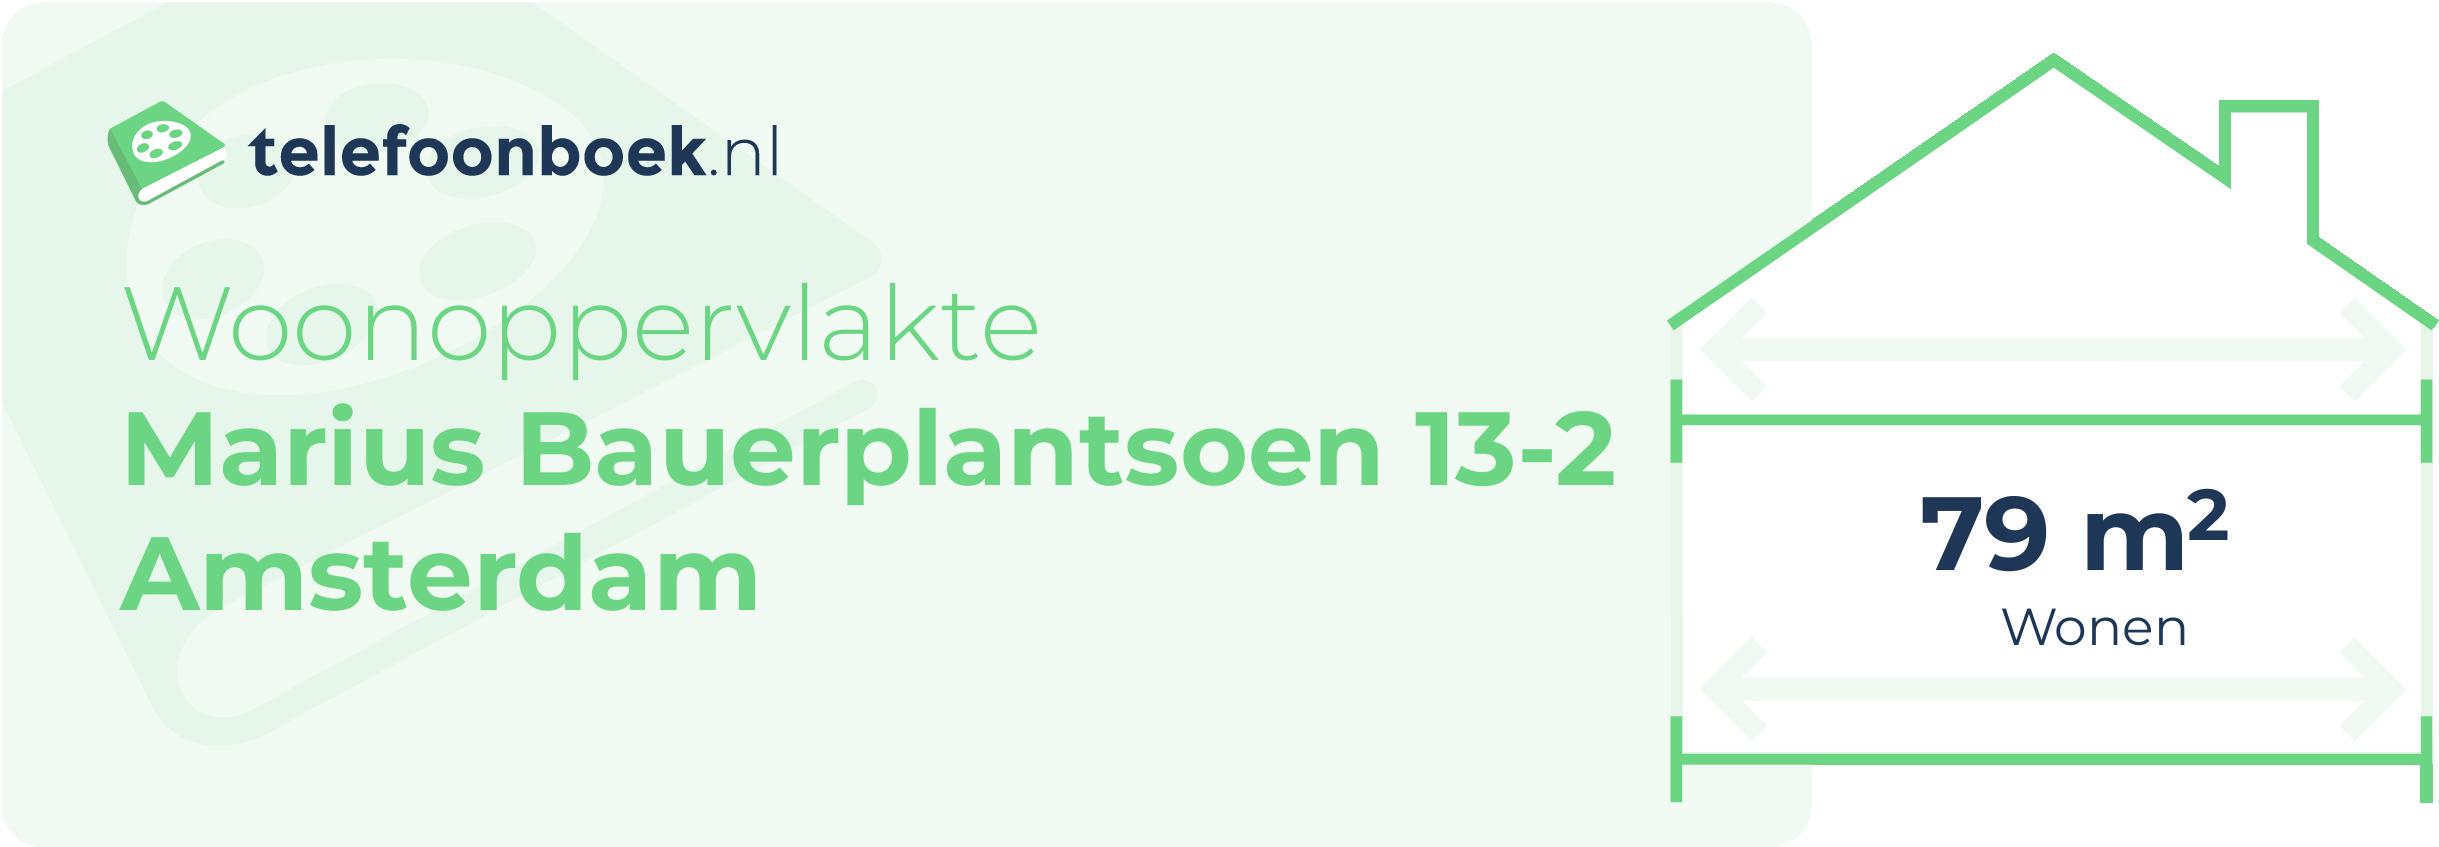 Woonoppervlakte Marius Bauerplantsoen 13-2 Amsterdam